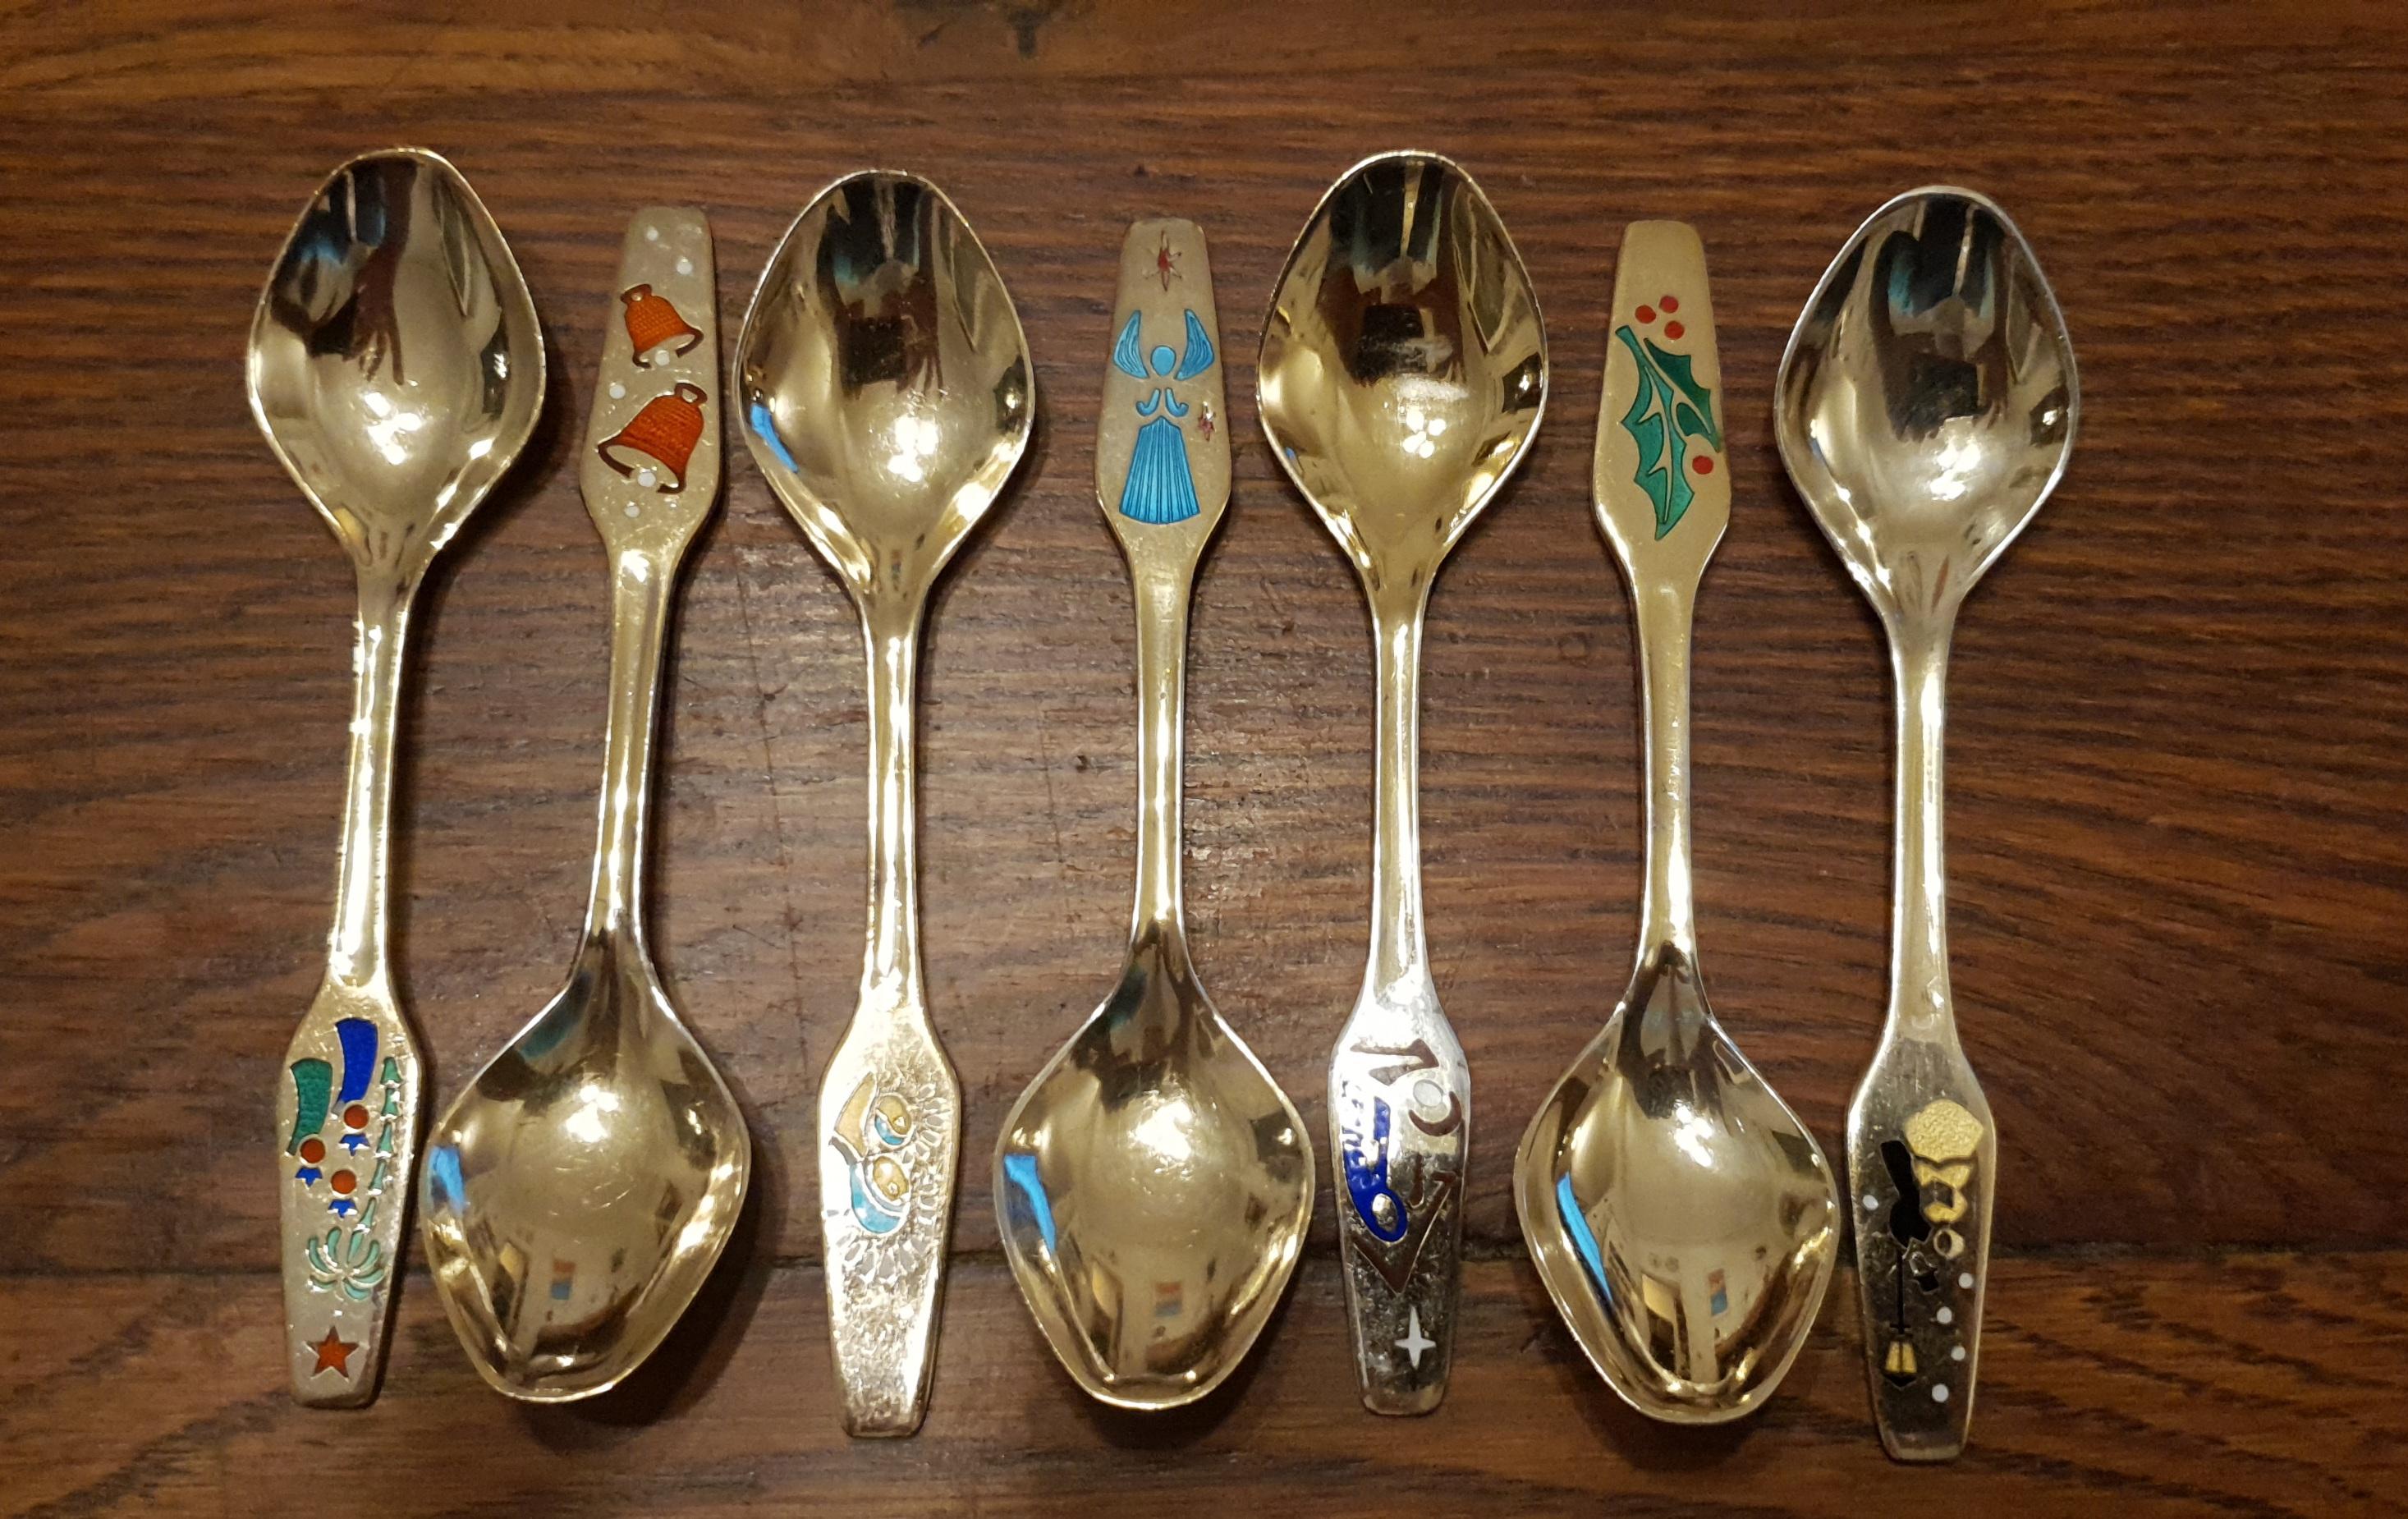 meka denmark spoons